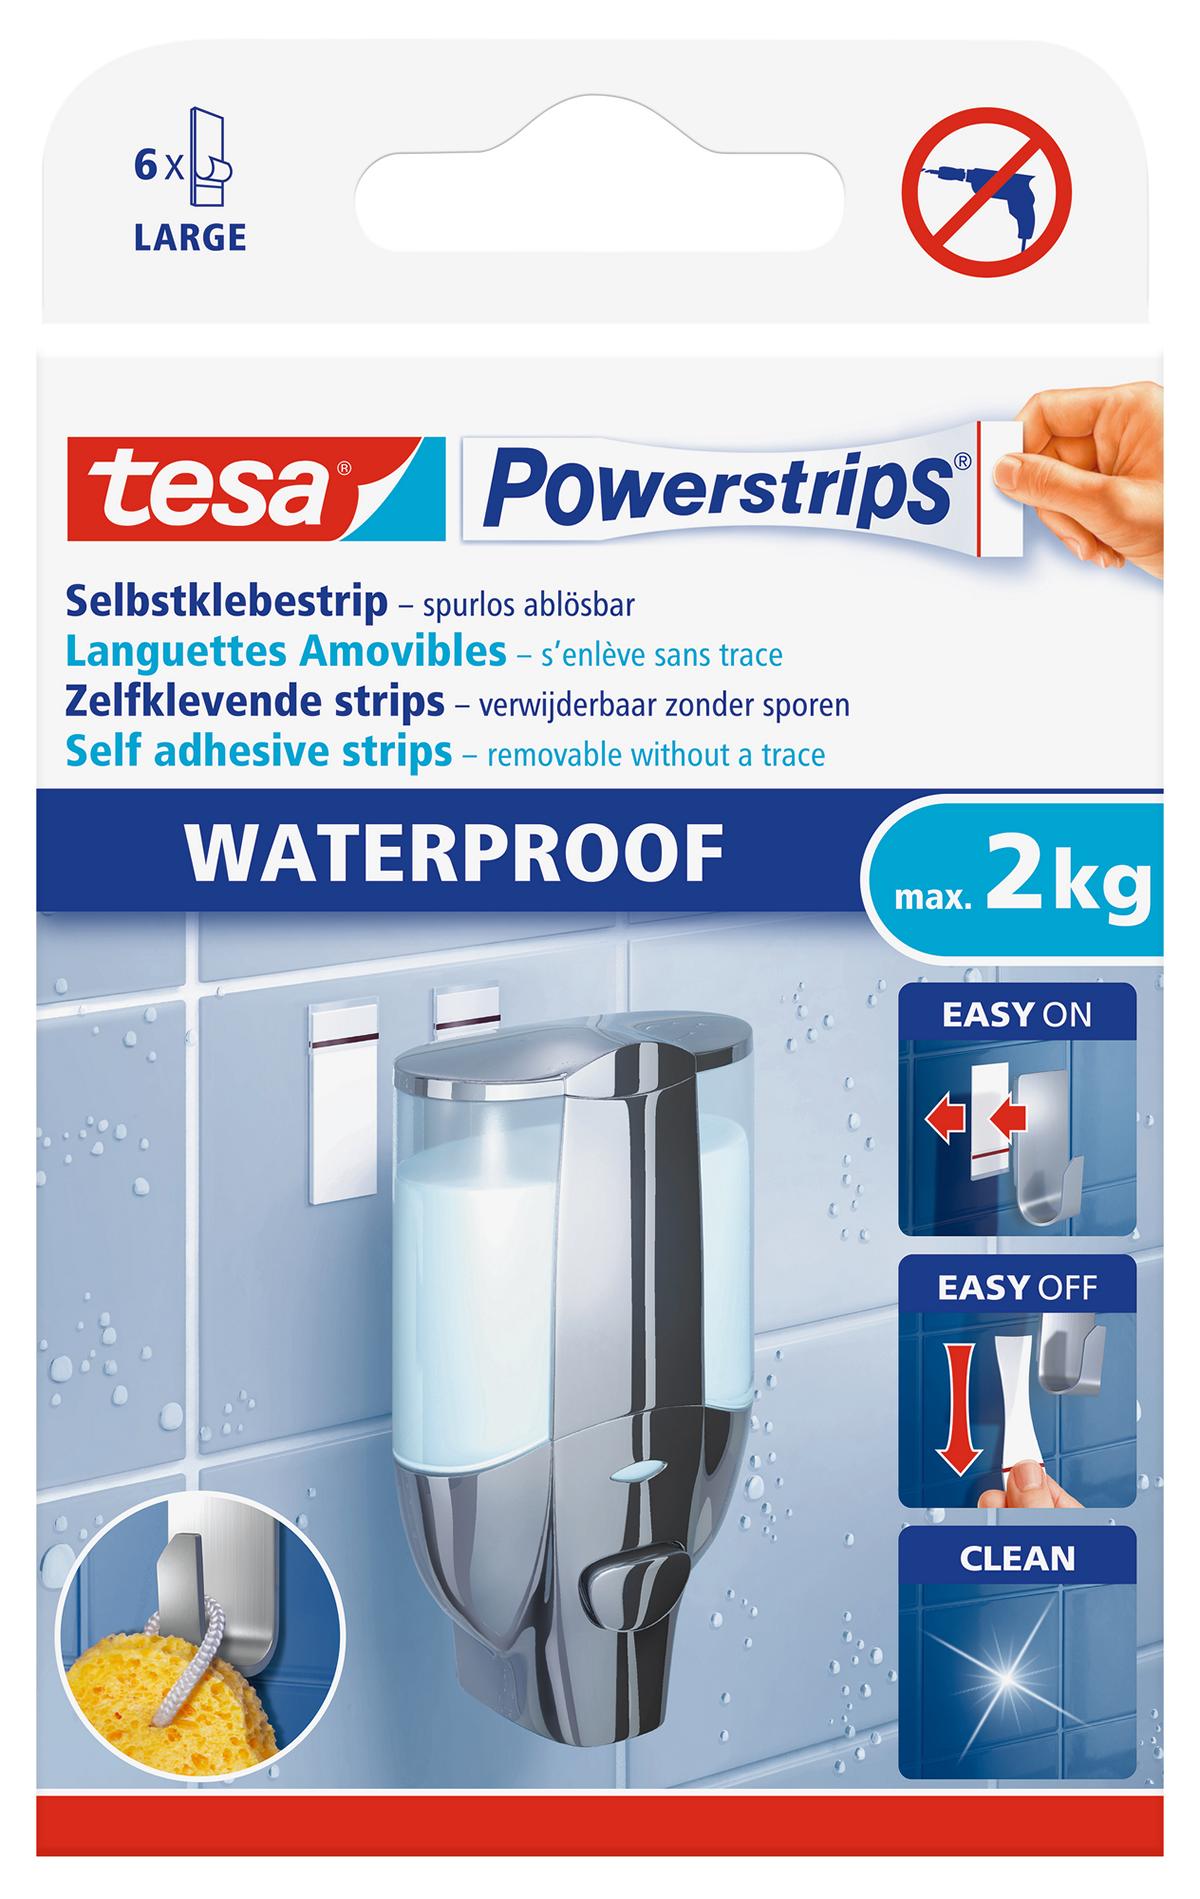 tesa Powerstrips Selbstklebestrip Waterproof